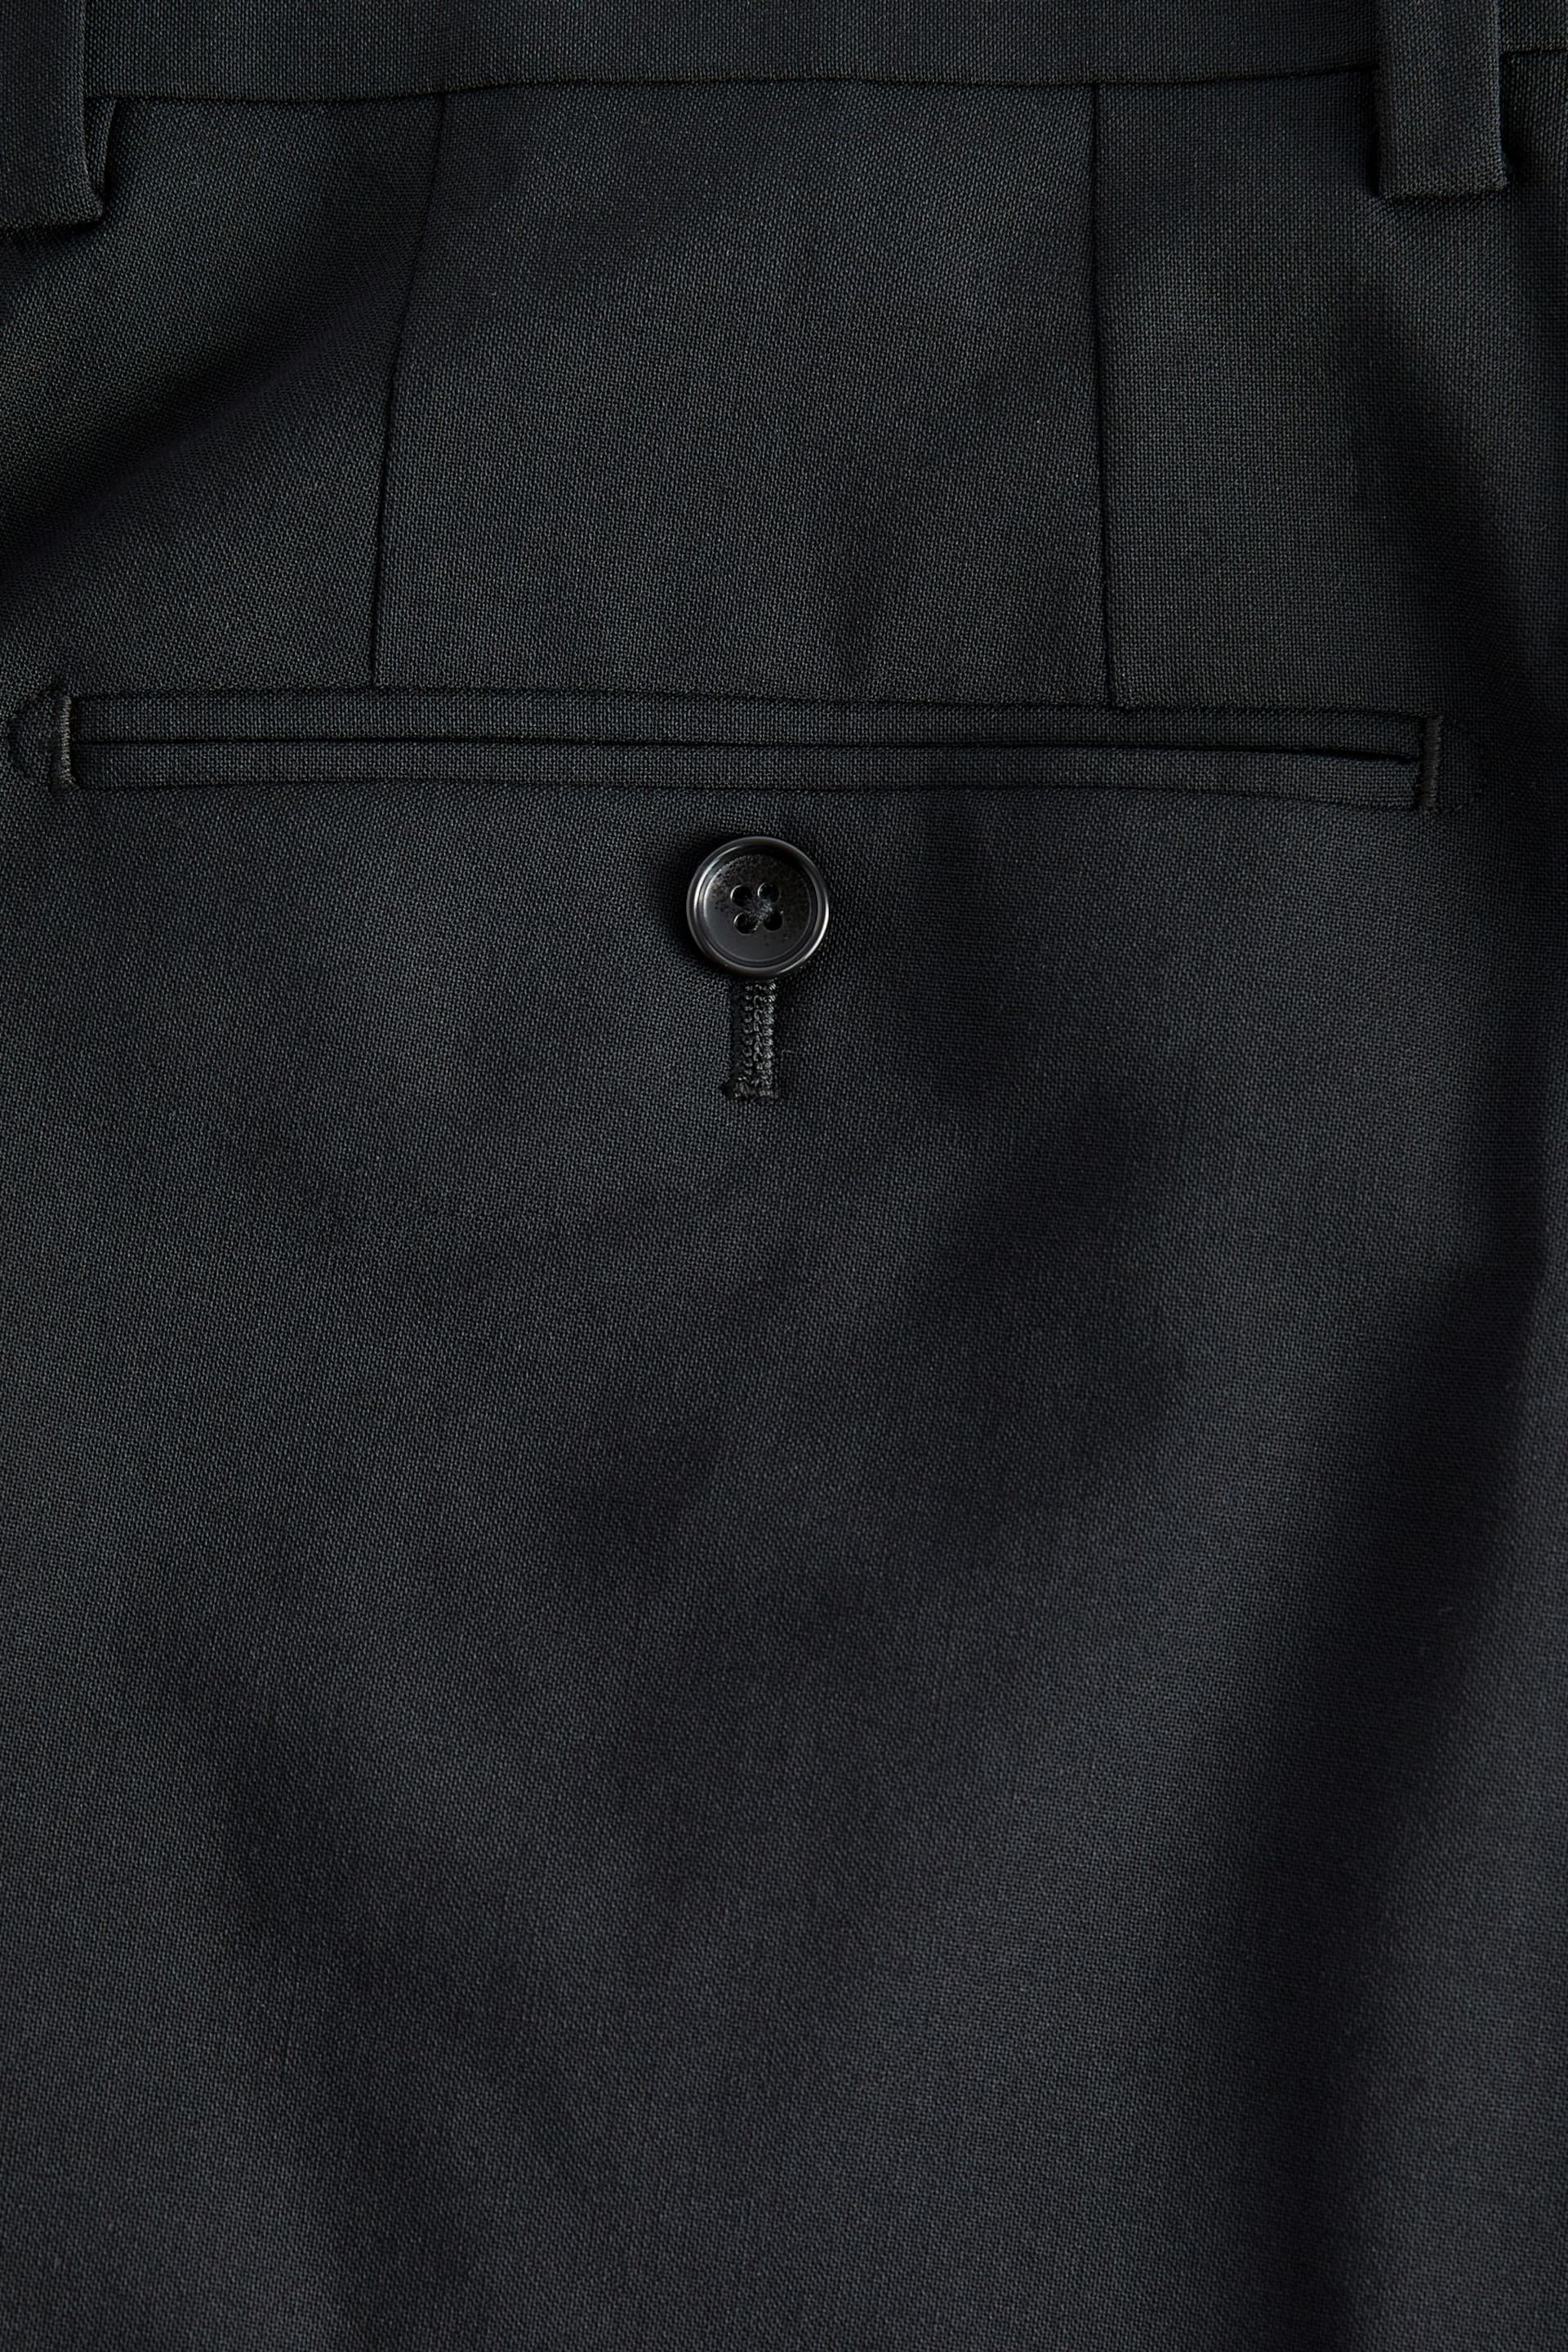 Black Regular Fit Signature Tollegno Italian Fabric Suit Trousers - Image 7 of 8